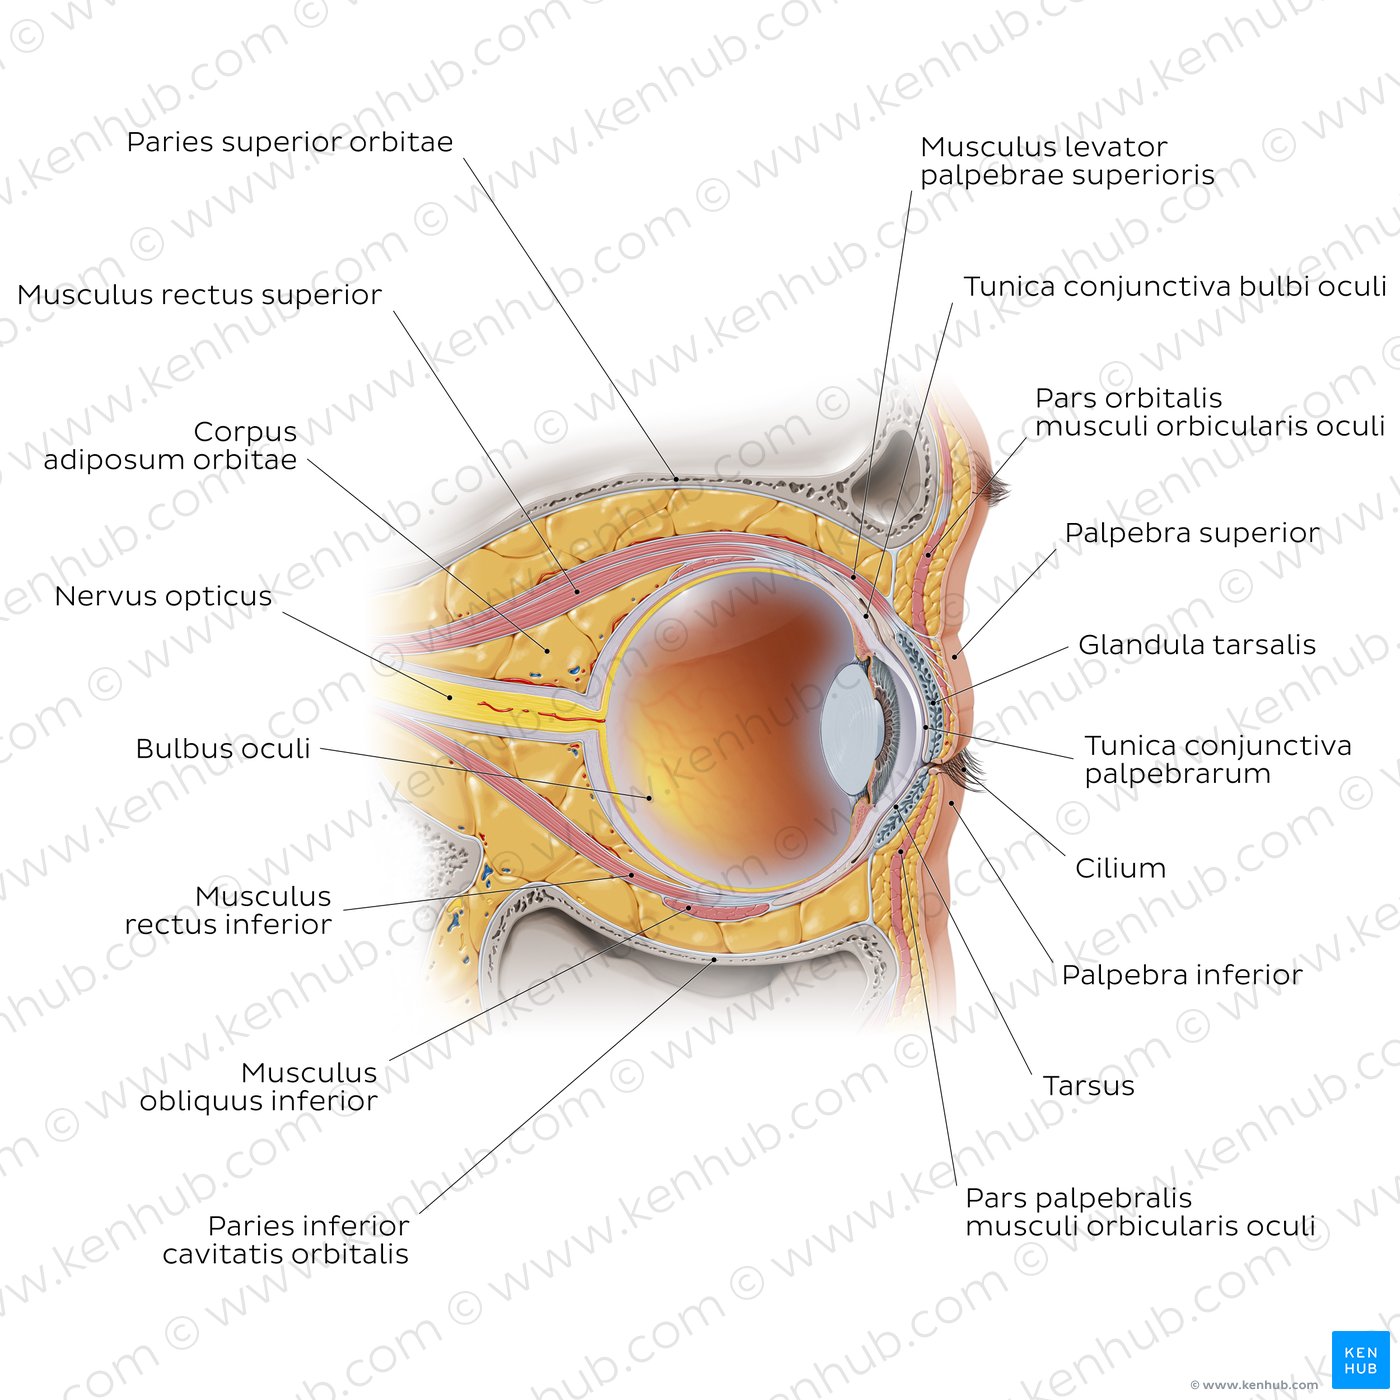 Sagittalschnitt durch das Auge